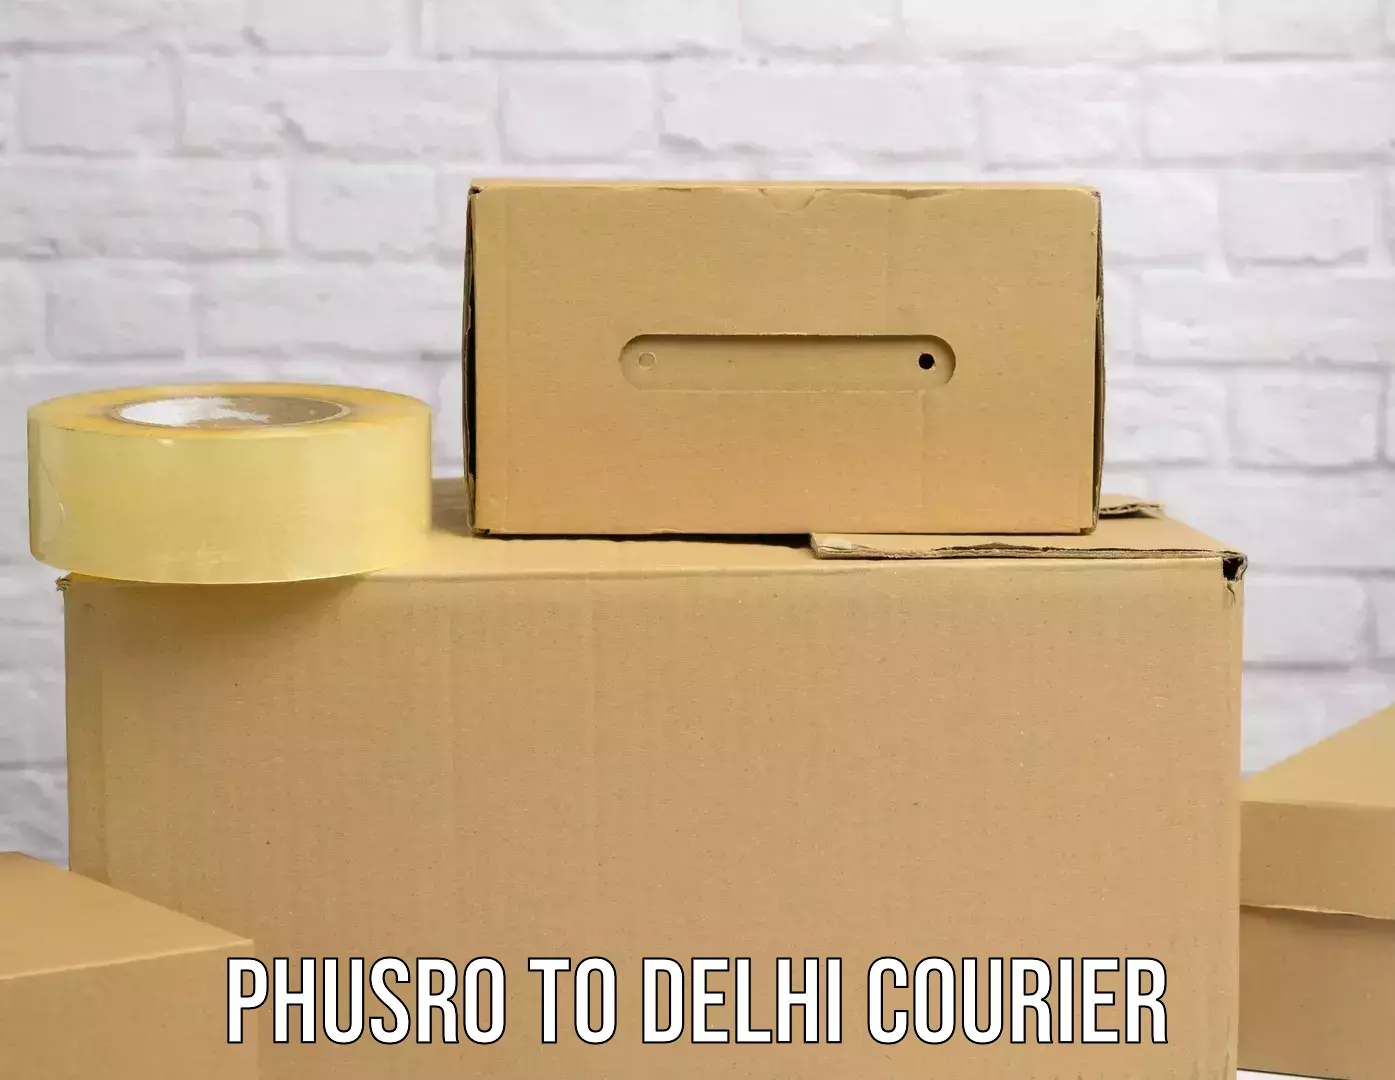 Multi-service courier options Phusro to Delhi